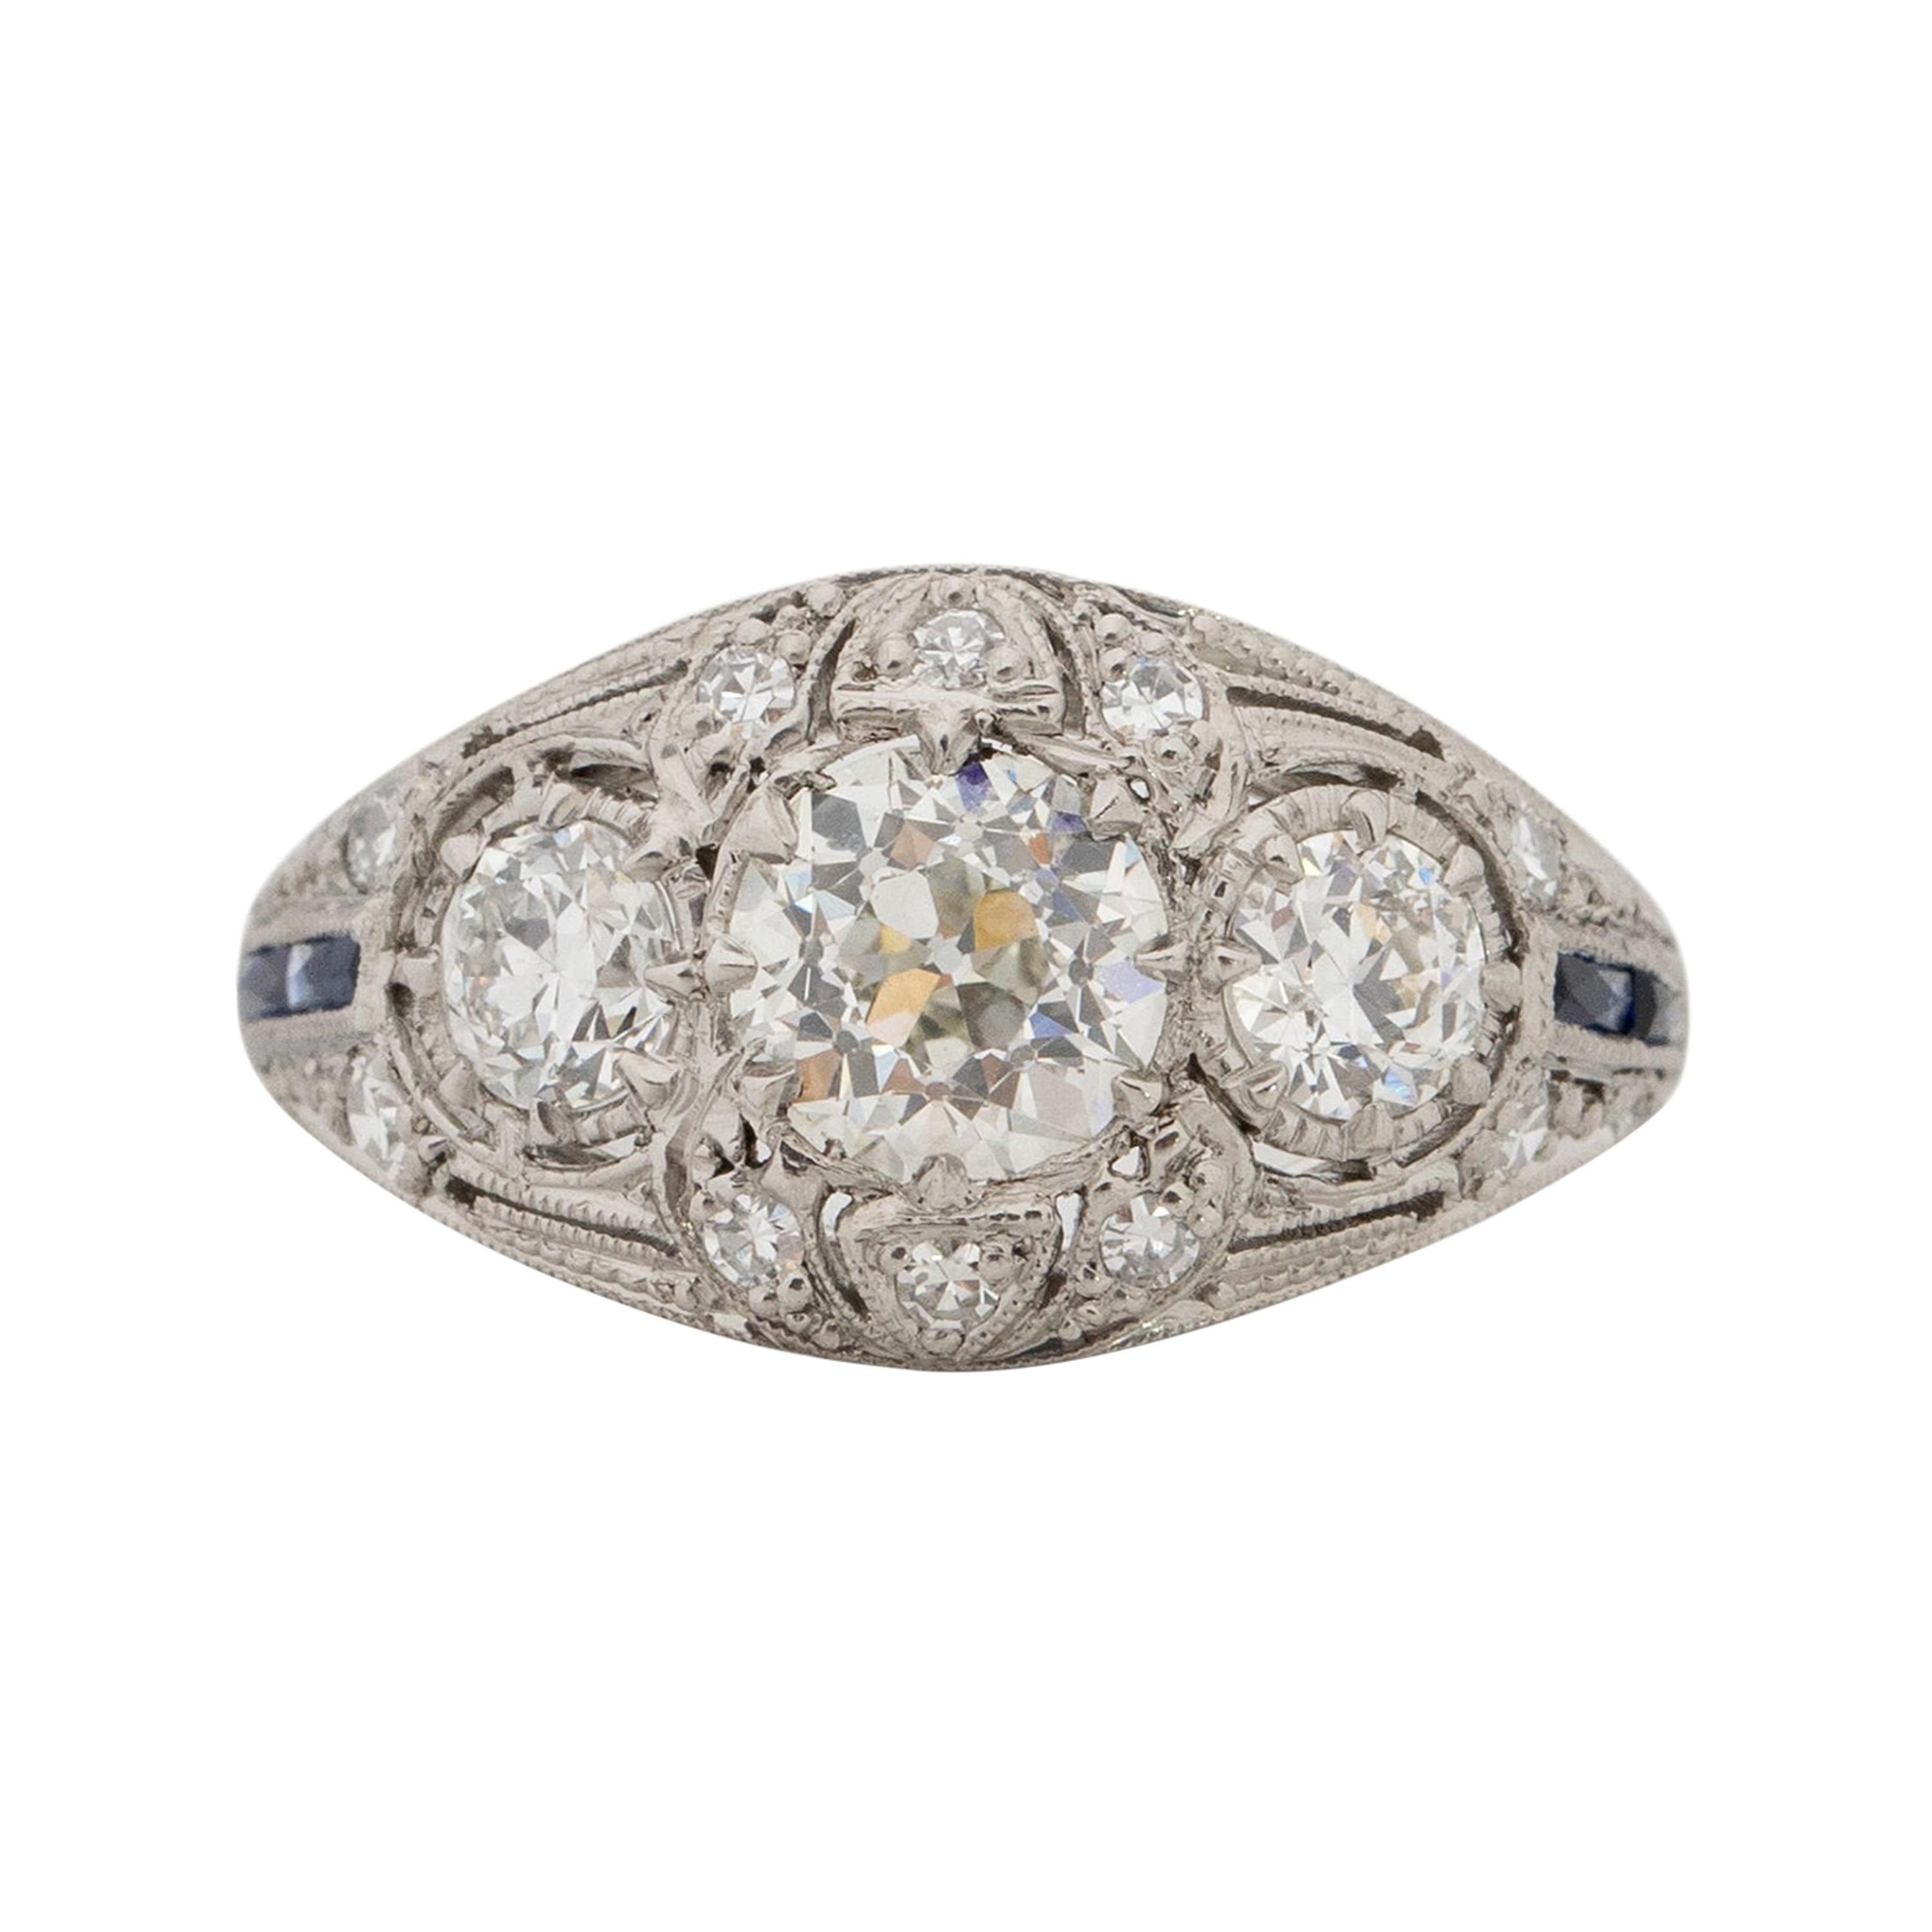 .71 Carat Art Deco Diamond Platinum Engagement Ring